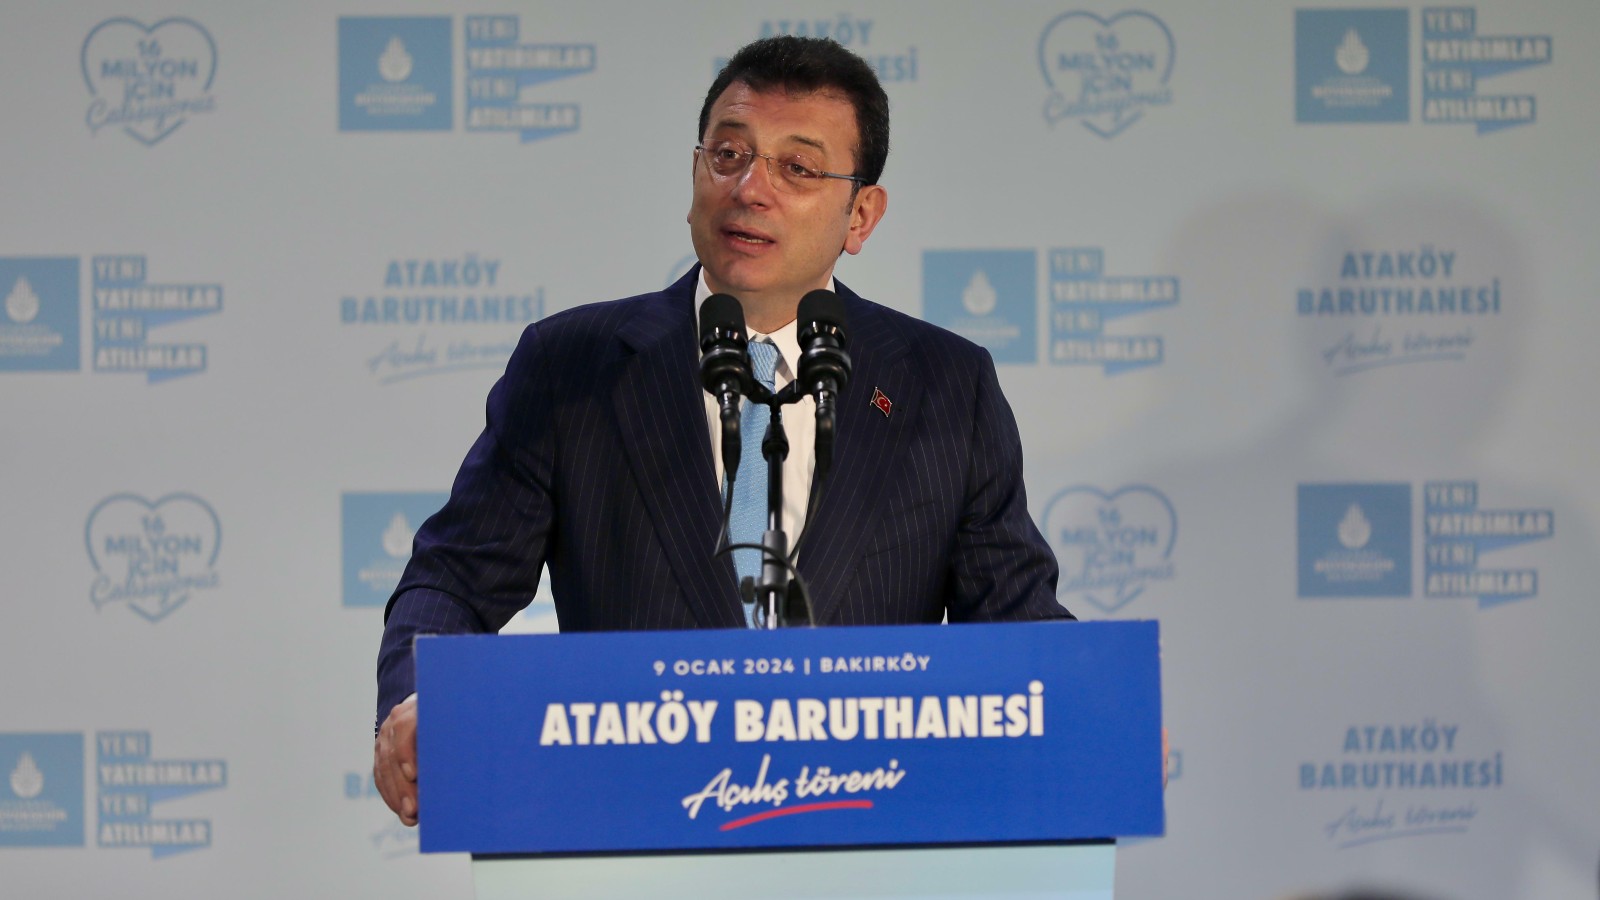 Ekrem İmamoğlu Ataköy Baruthanesi açılış töreninde konuştu